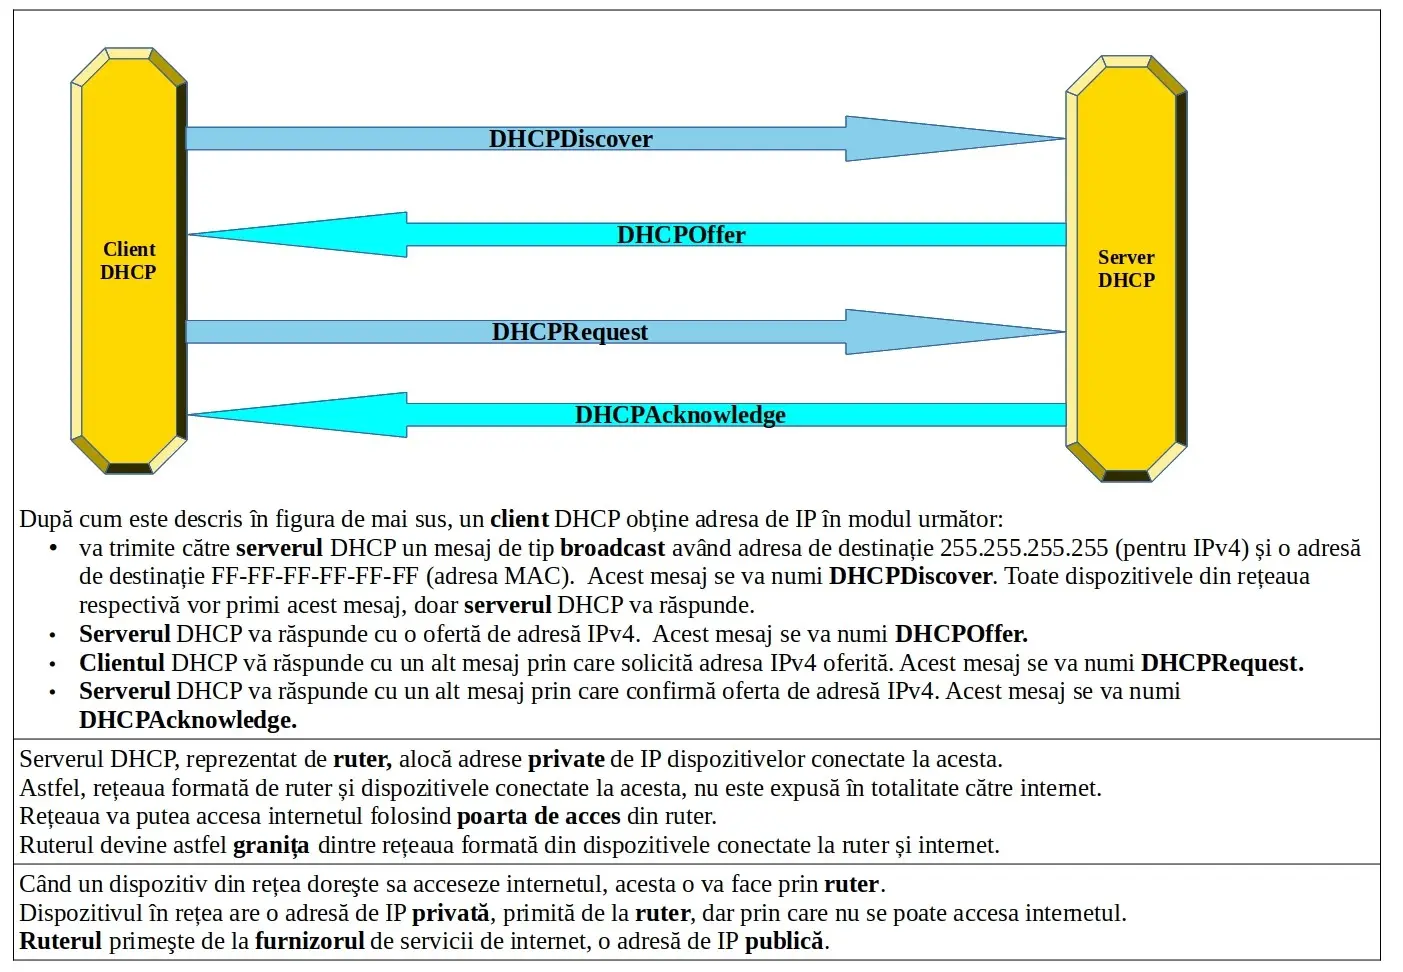 Adresarea dinamică de IP folosind DHCP